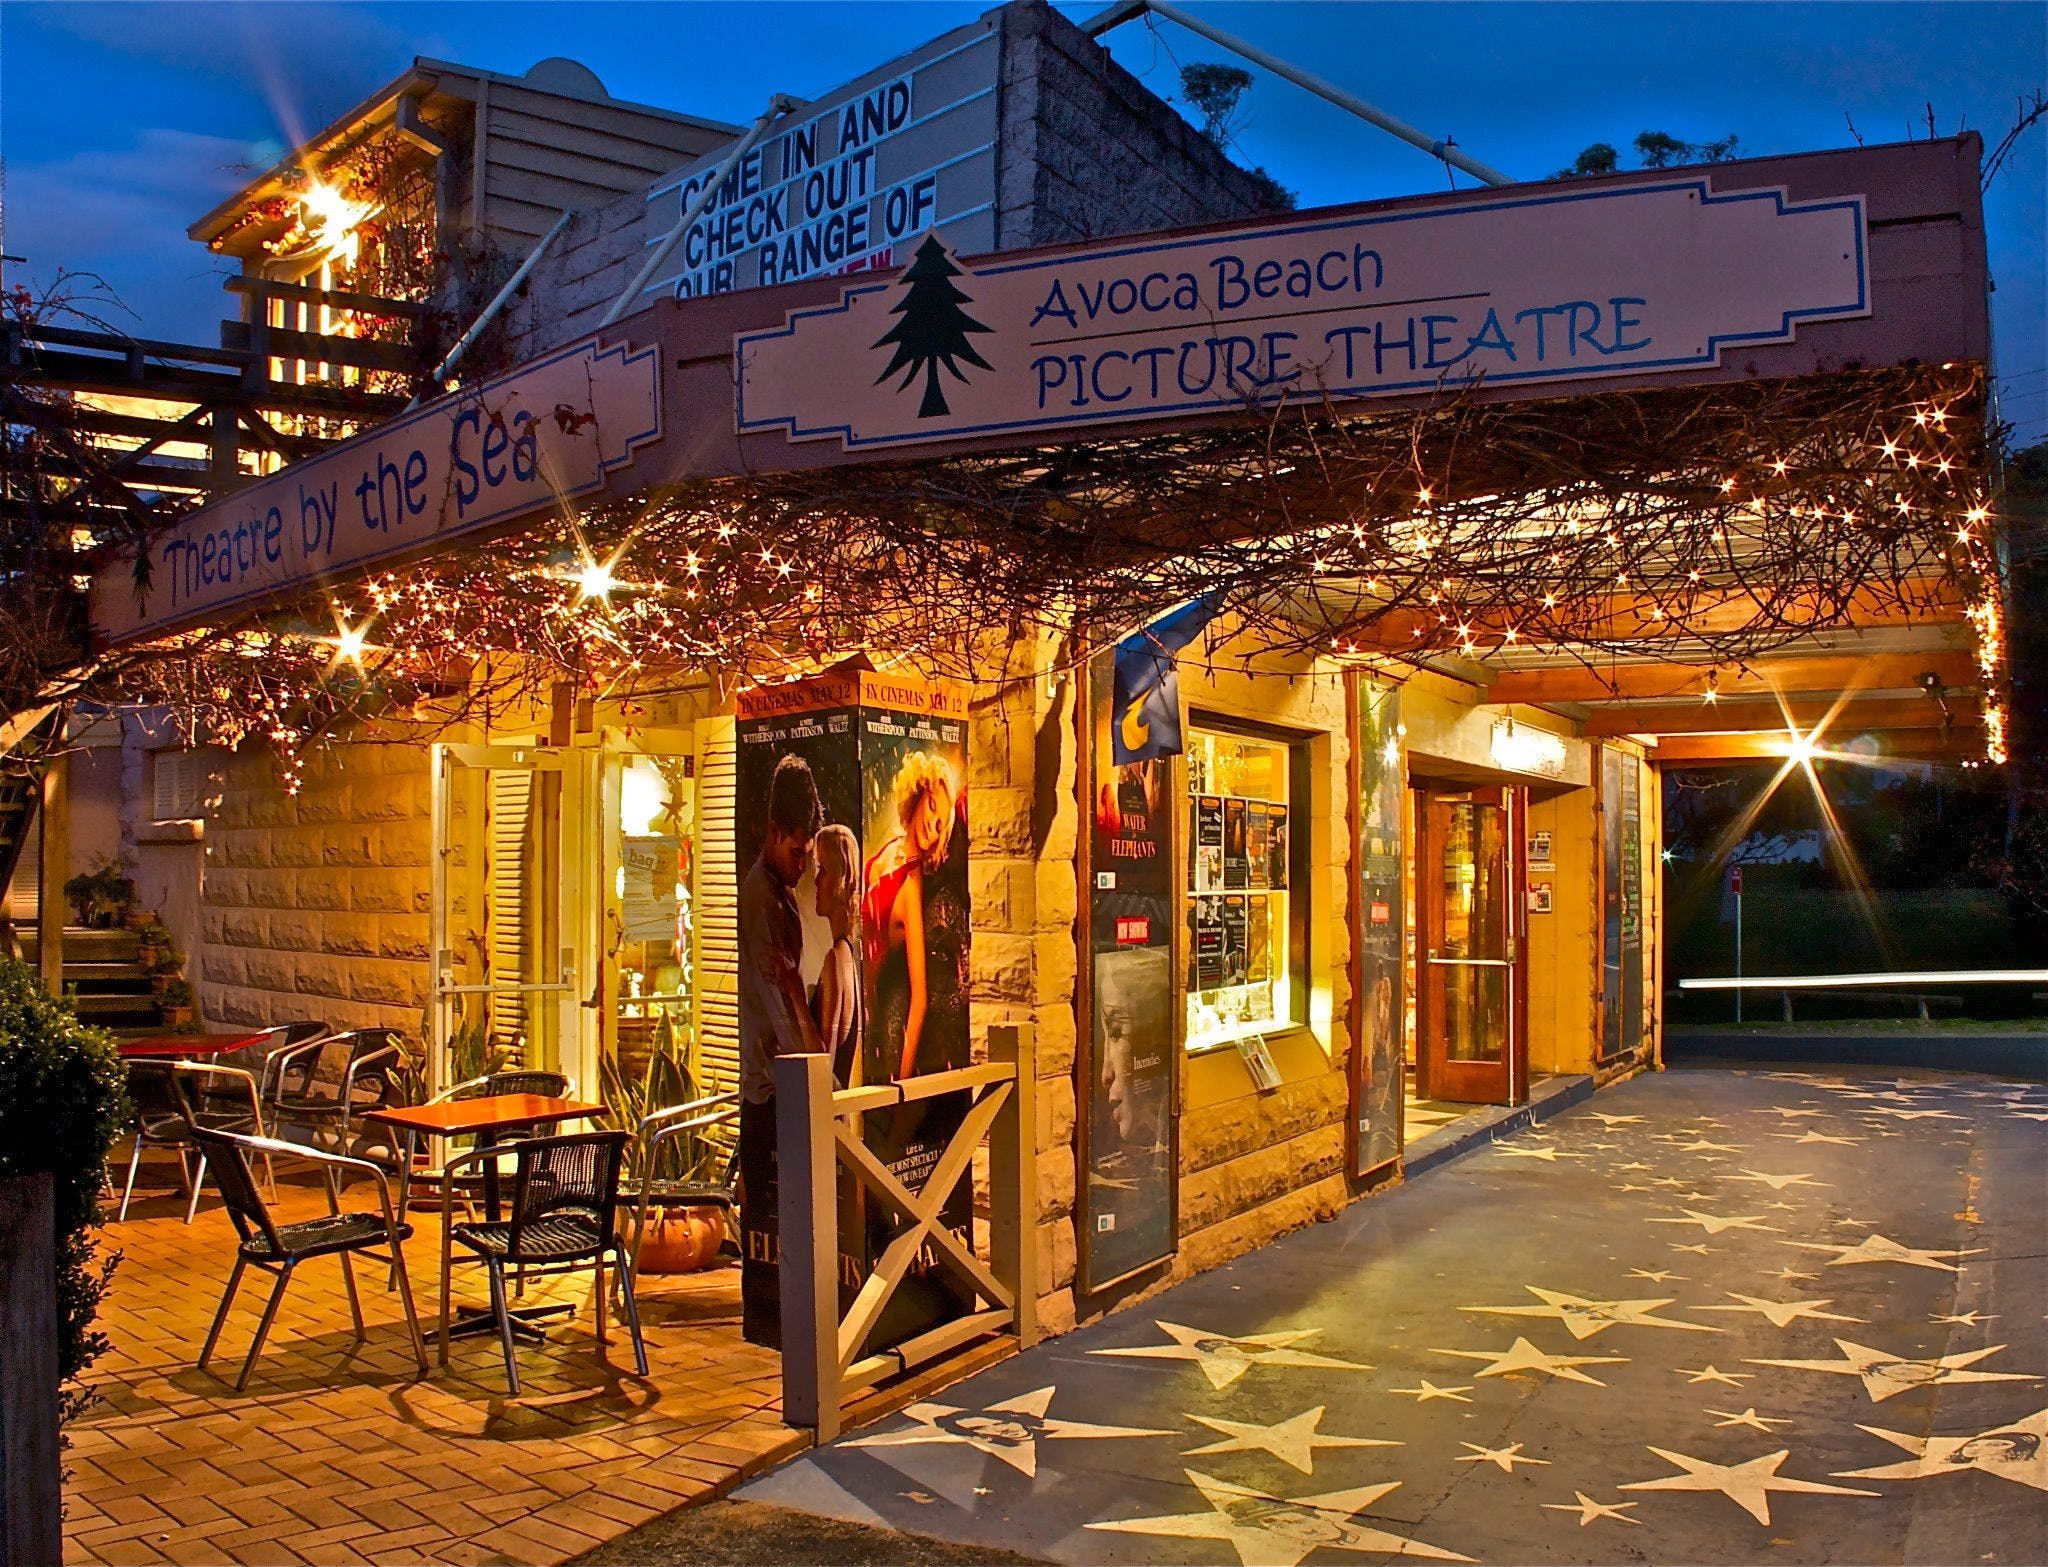 Avoca Beach Picture Theatre - Accommodation Gladstone